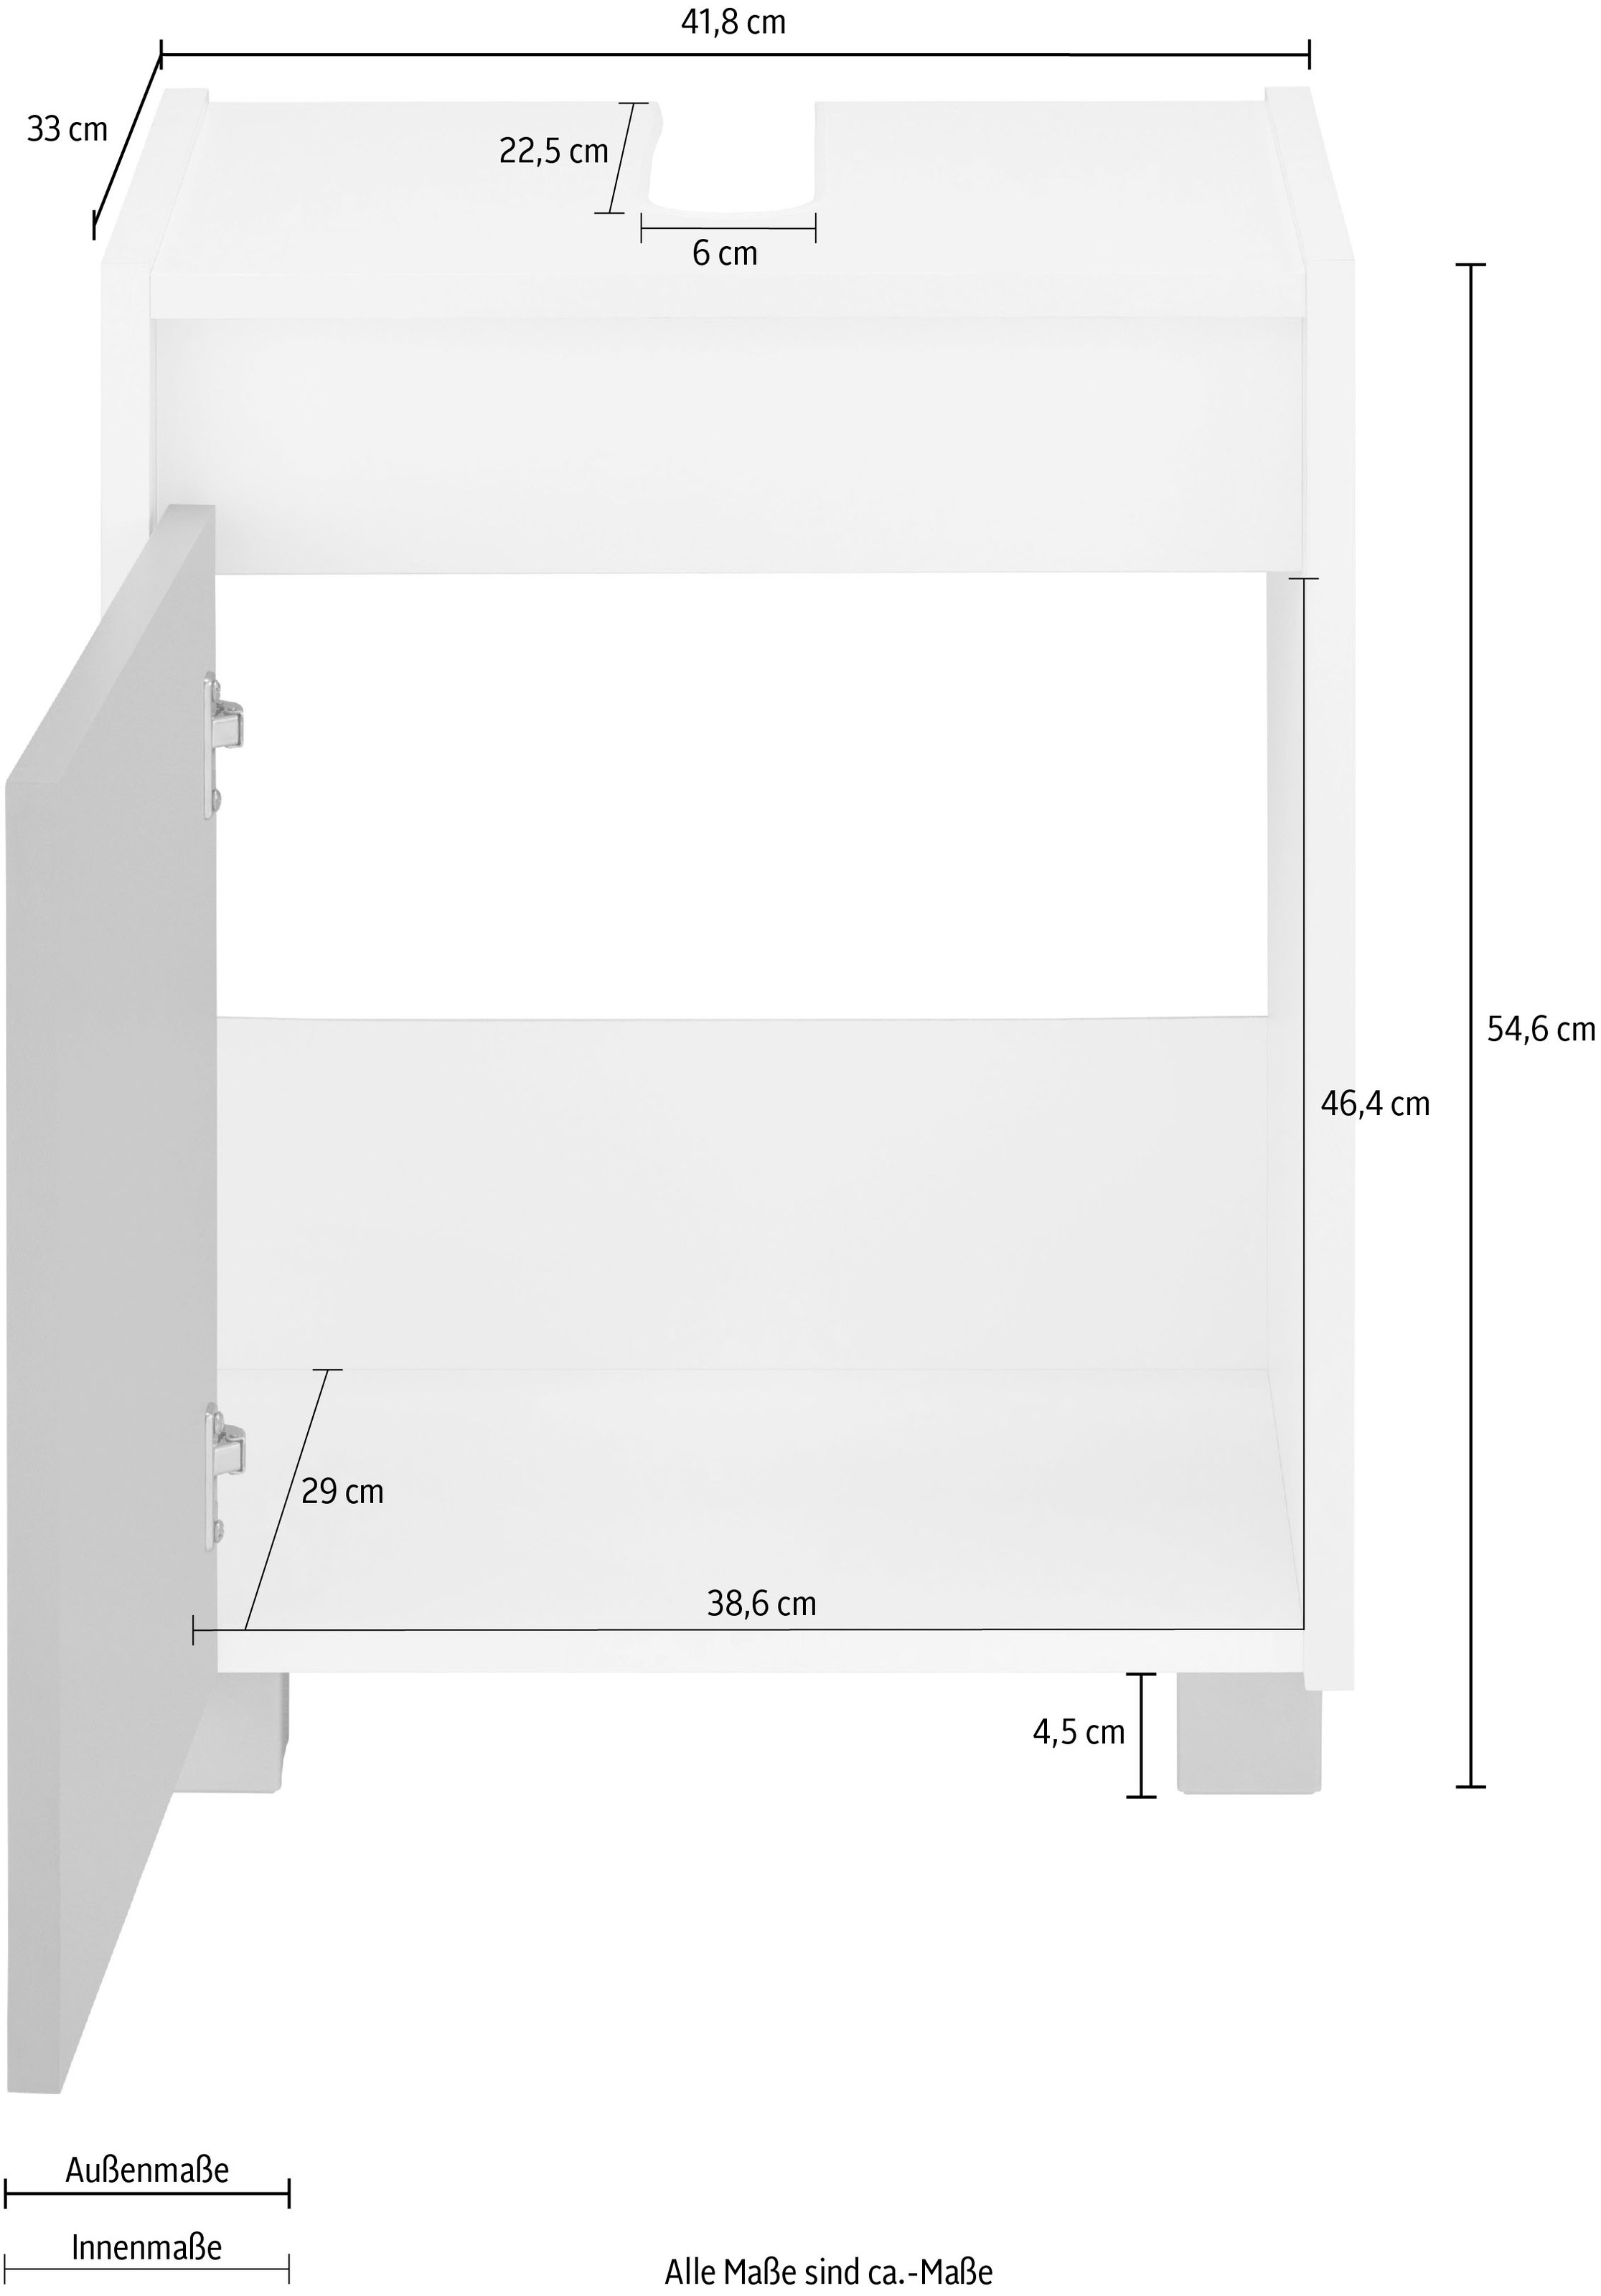 INOSIGN Waschbeckenunterschrank »List«, Breite 41,8 cm, Höhe 54,6 cm,  grifflos, Siphonausschnitt kaufen bei OTTO | Waschbeckenunterschränke